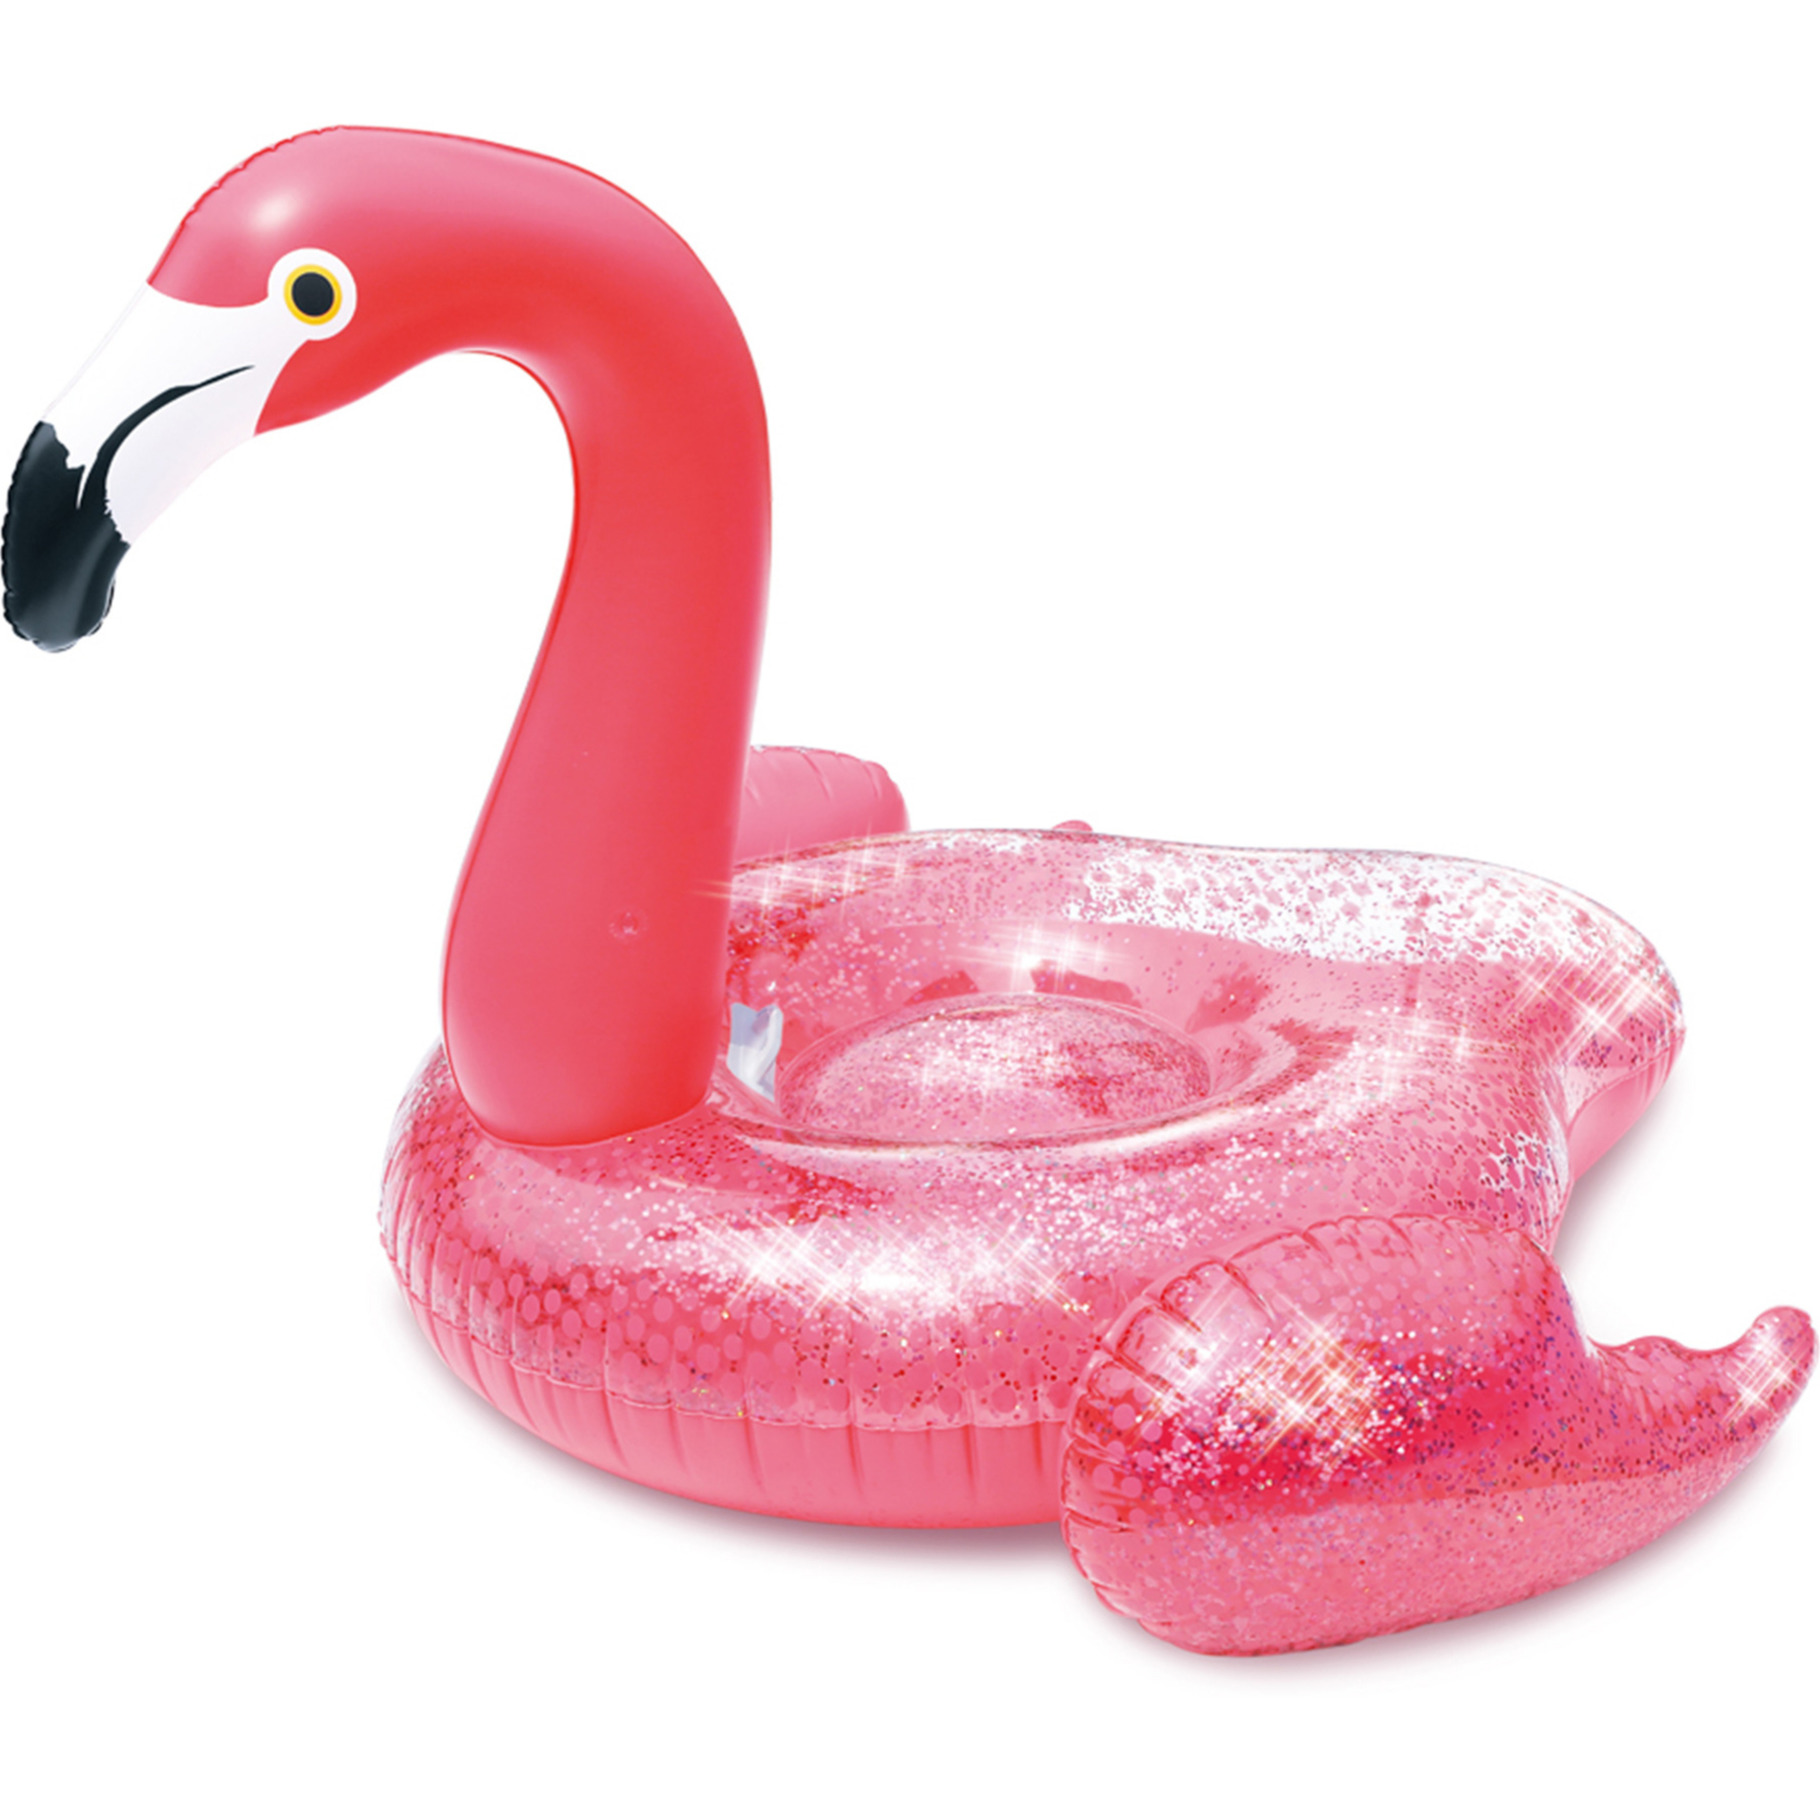 Afbeelding Waterspeelgoed roze glitter flamingo ride-on/luchtbed 138 x 140 x 98 cm voor jongens/meisjes/kinderen door Animals Giftshop